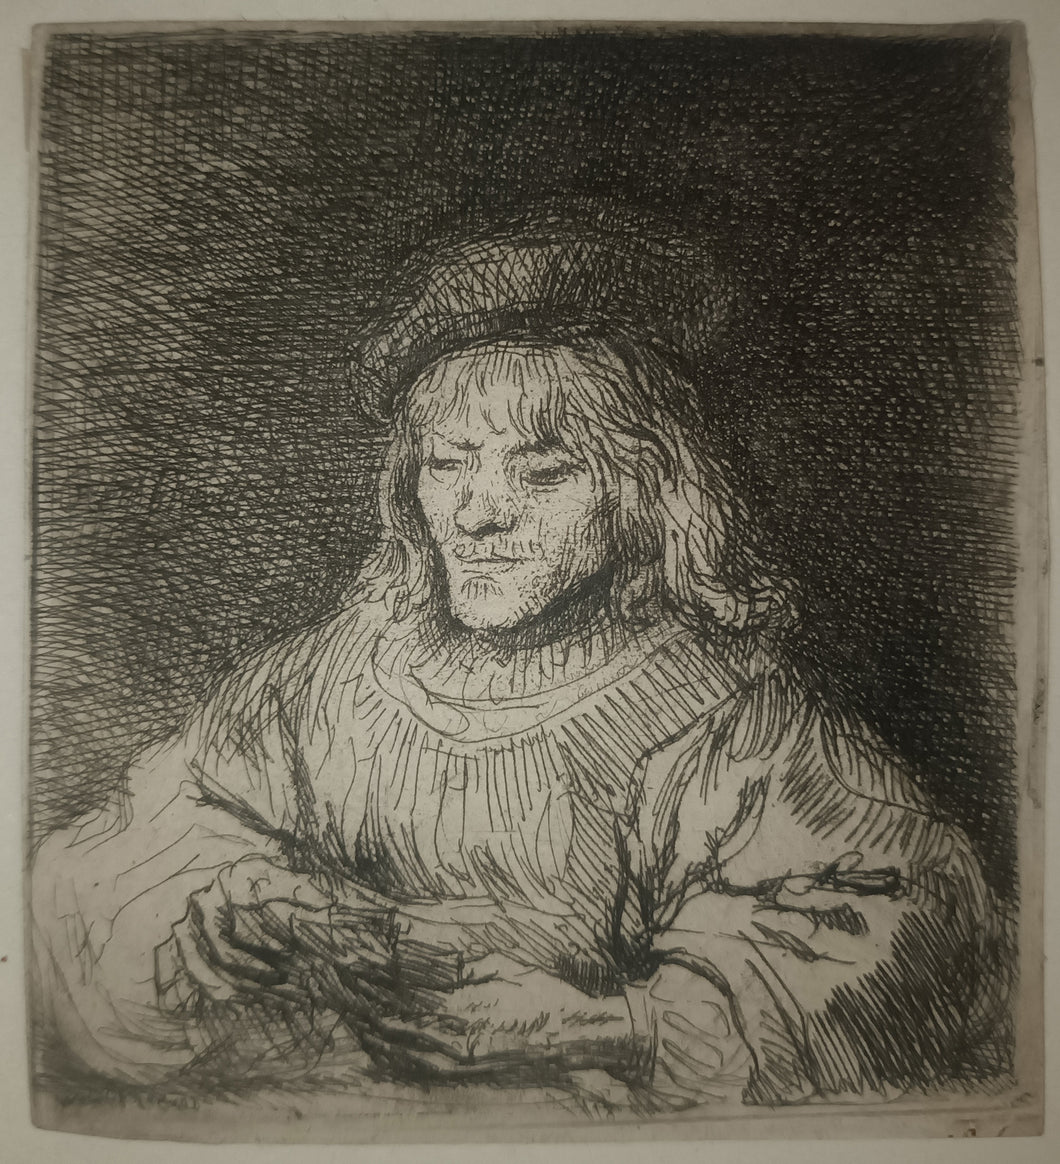 Le joueur de carte, 1641.